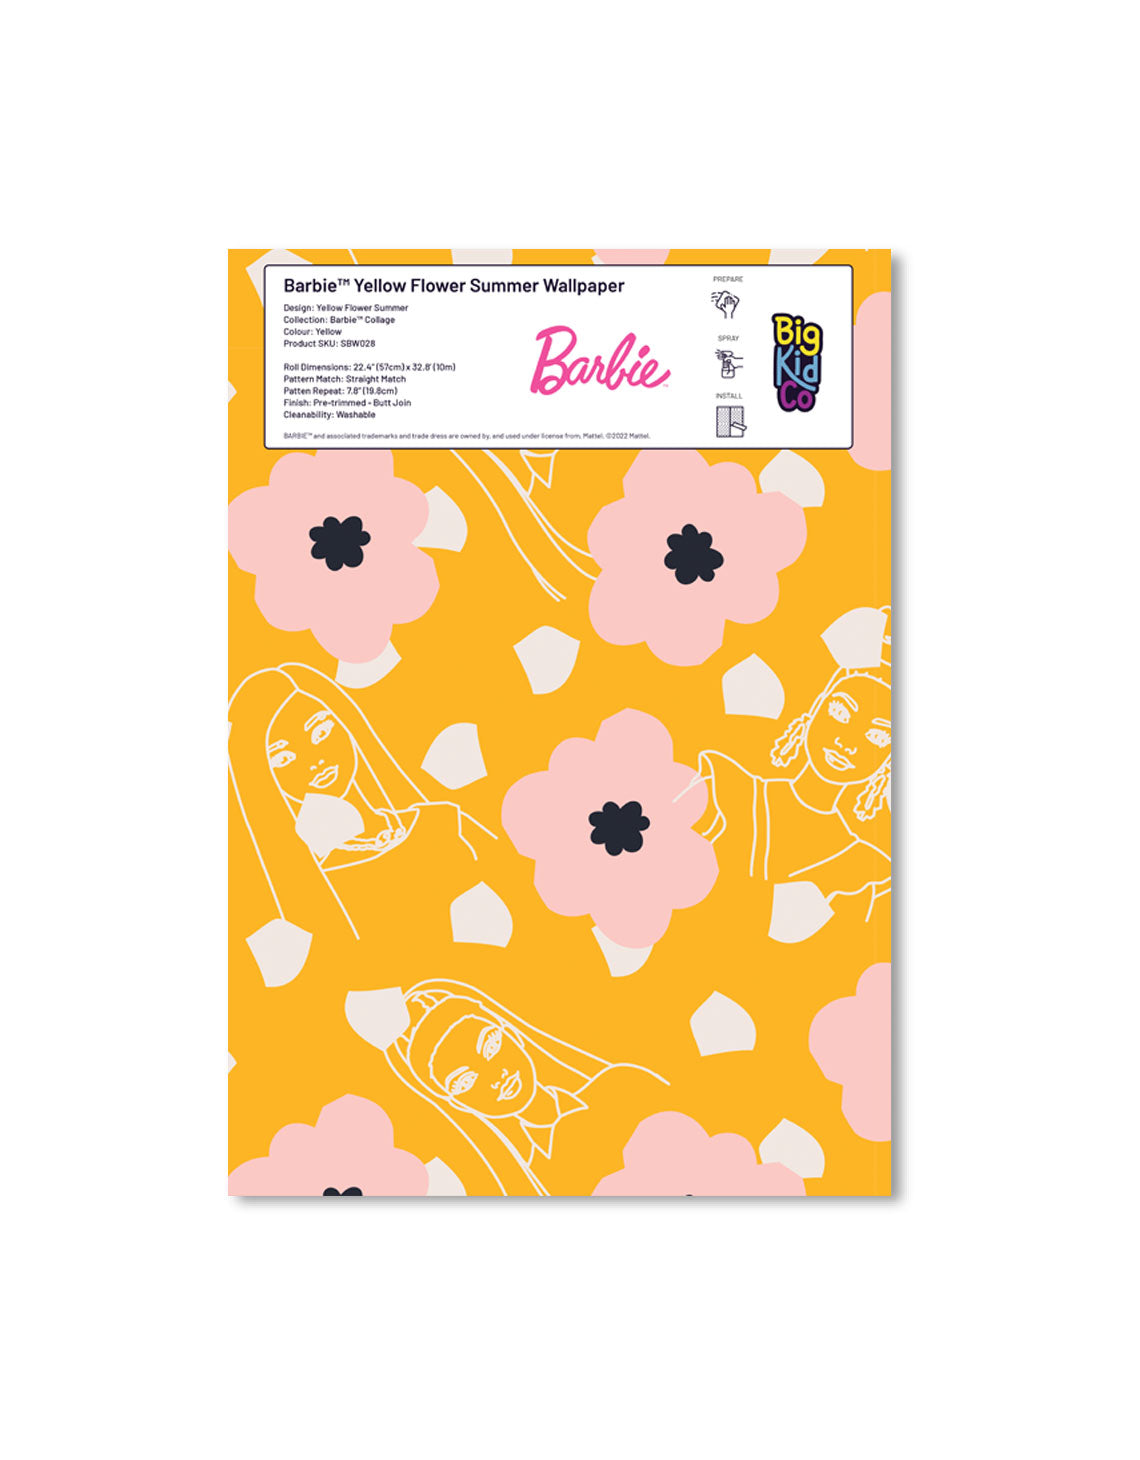 Barbie Yellow Flower Summer Wallpaper